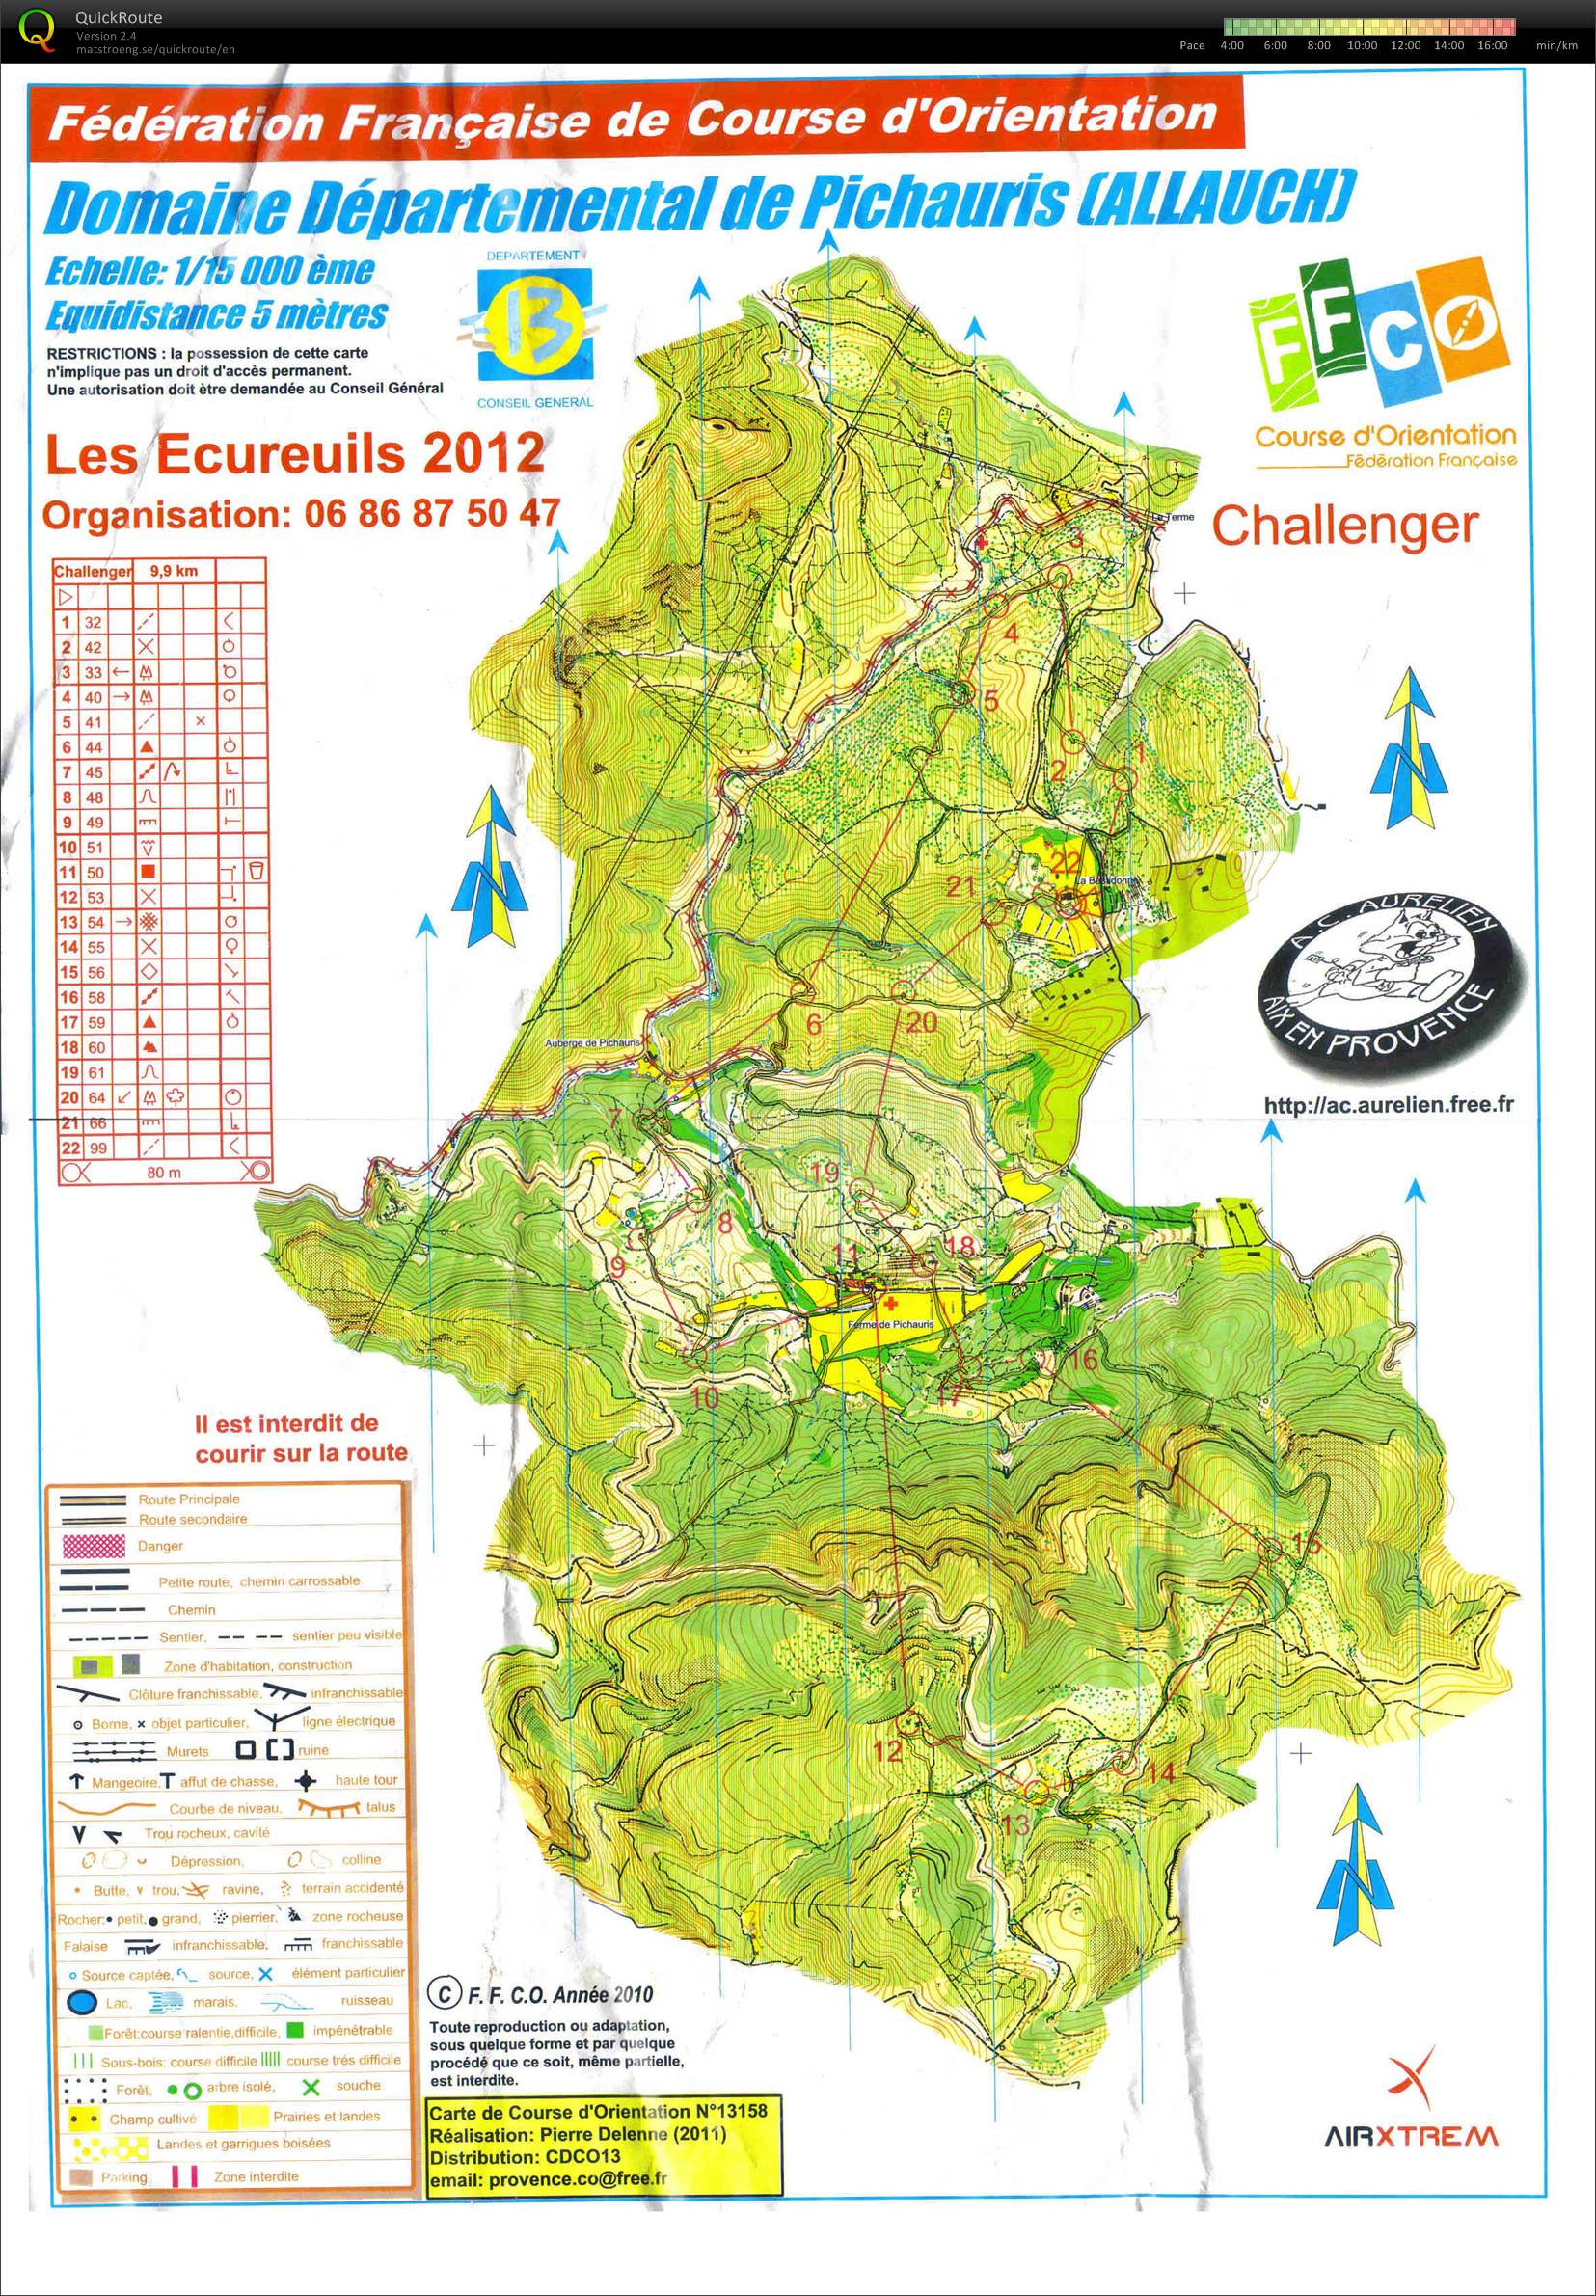 Les Ecureuils - Challenger (2012-01-29)